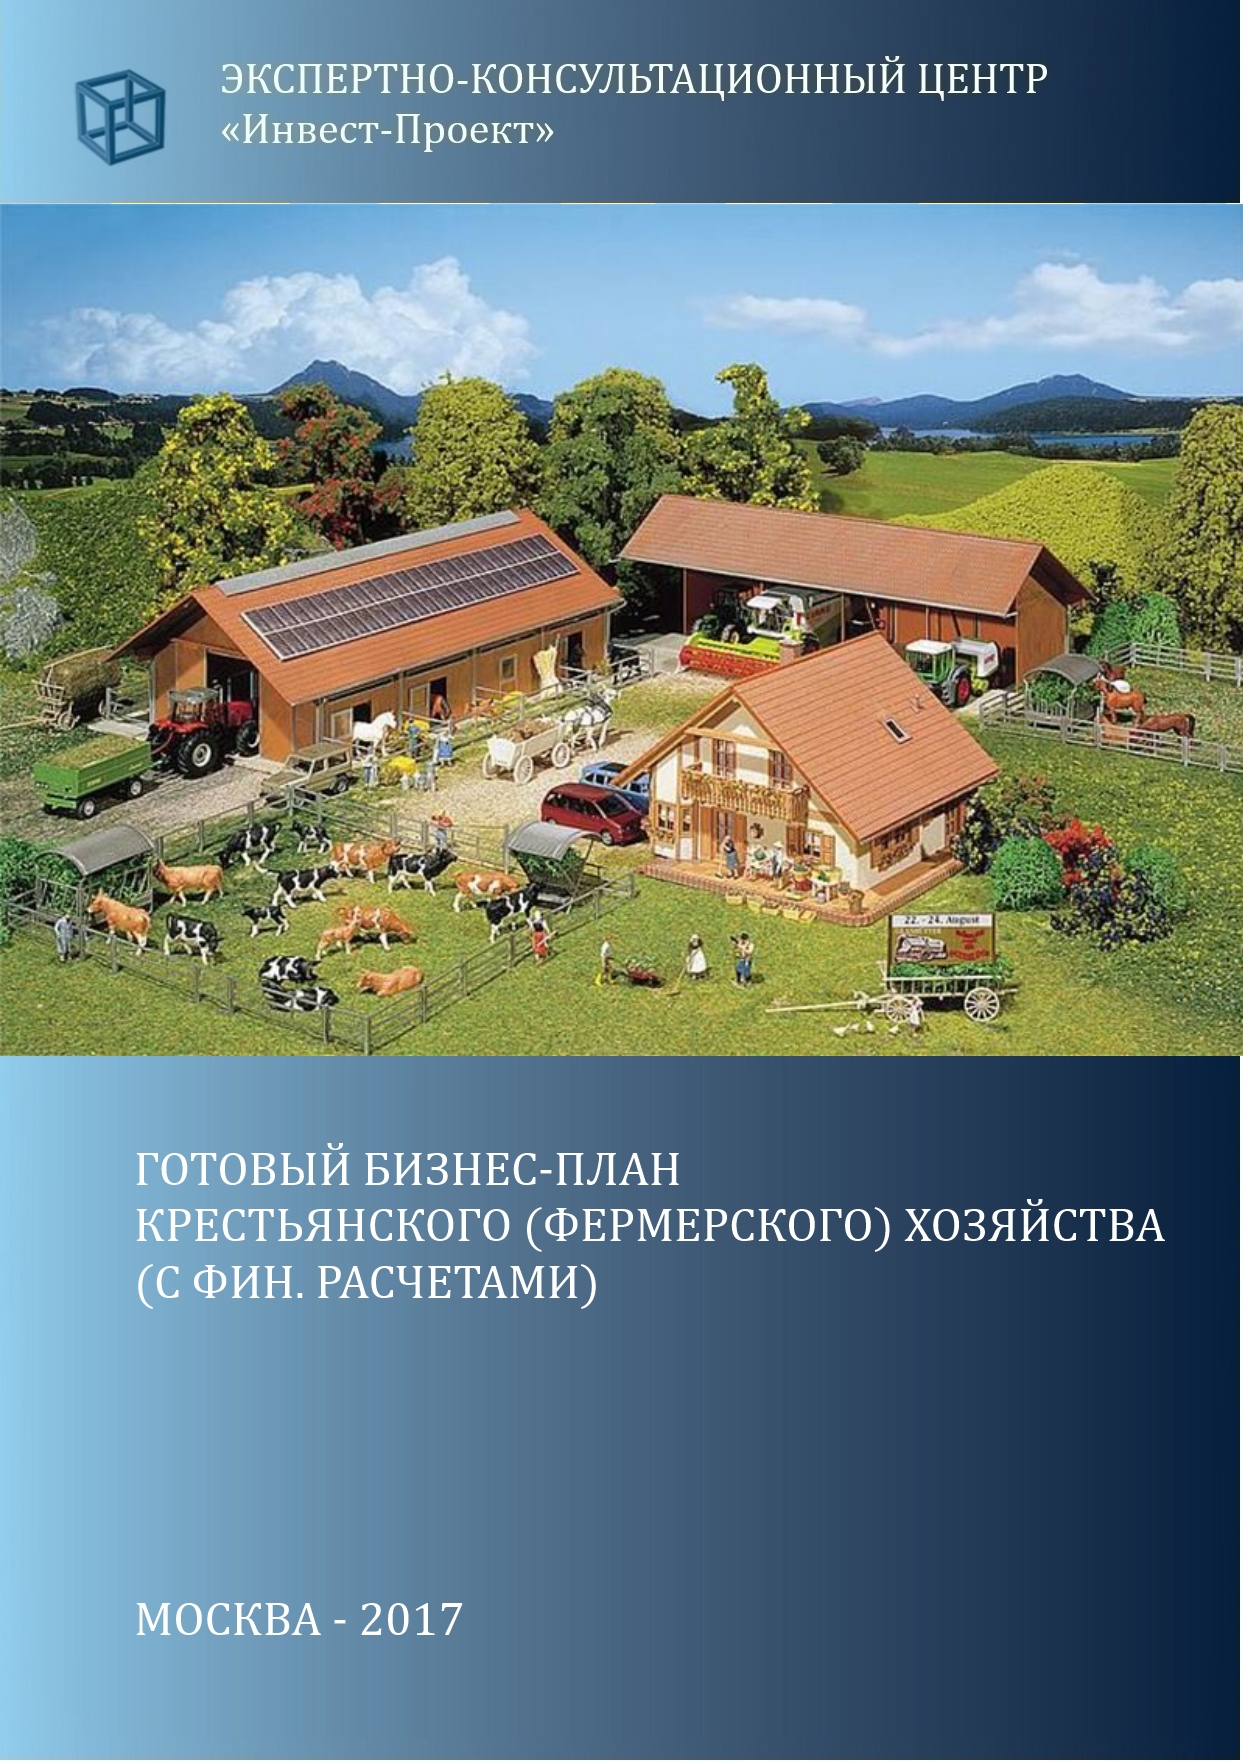 Как создать фермерское хозяйство в Беларуси?